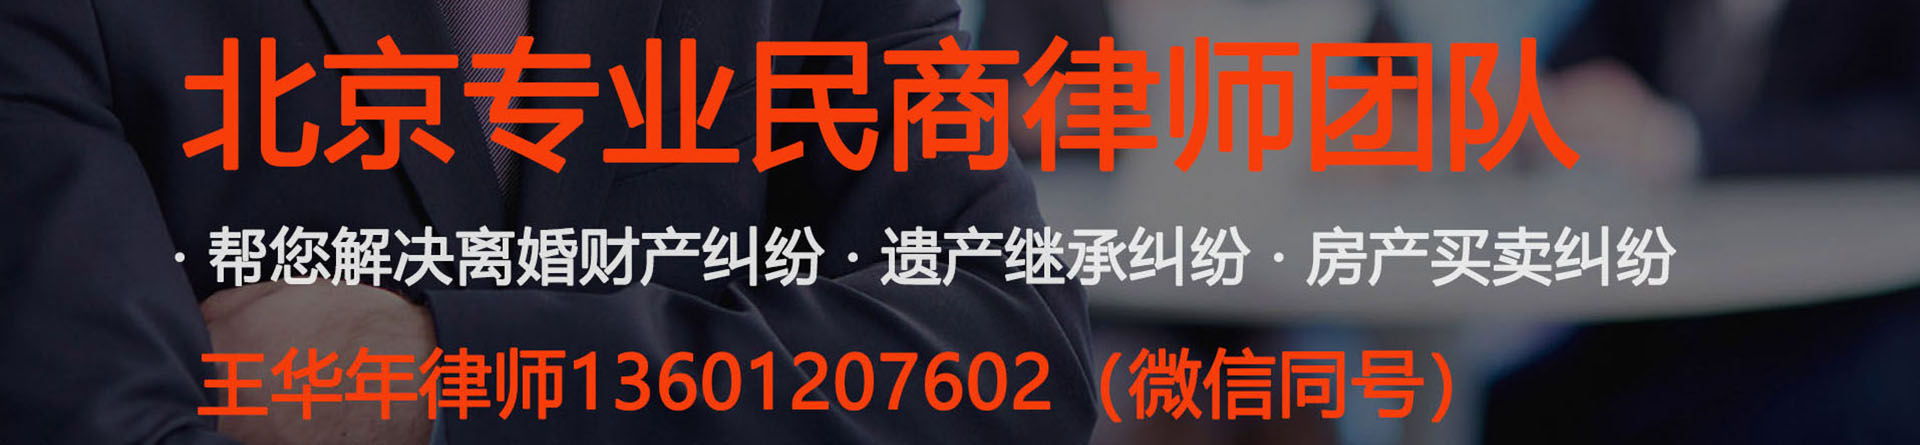 东四律师事务所免费咨询-北京东城东四附近的律师事务所地址电话